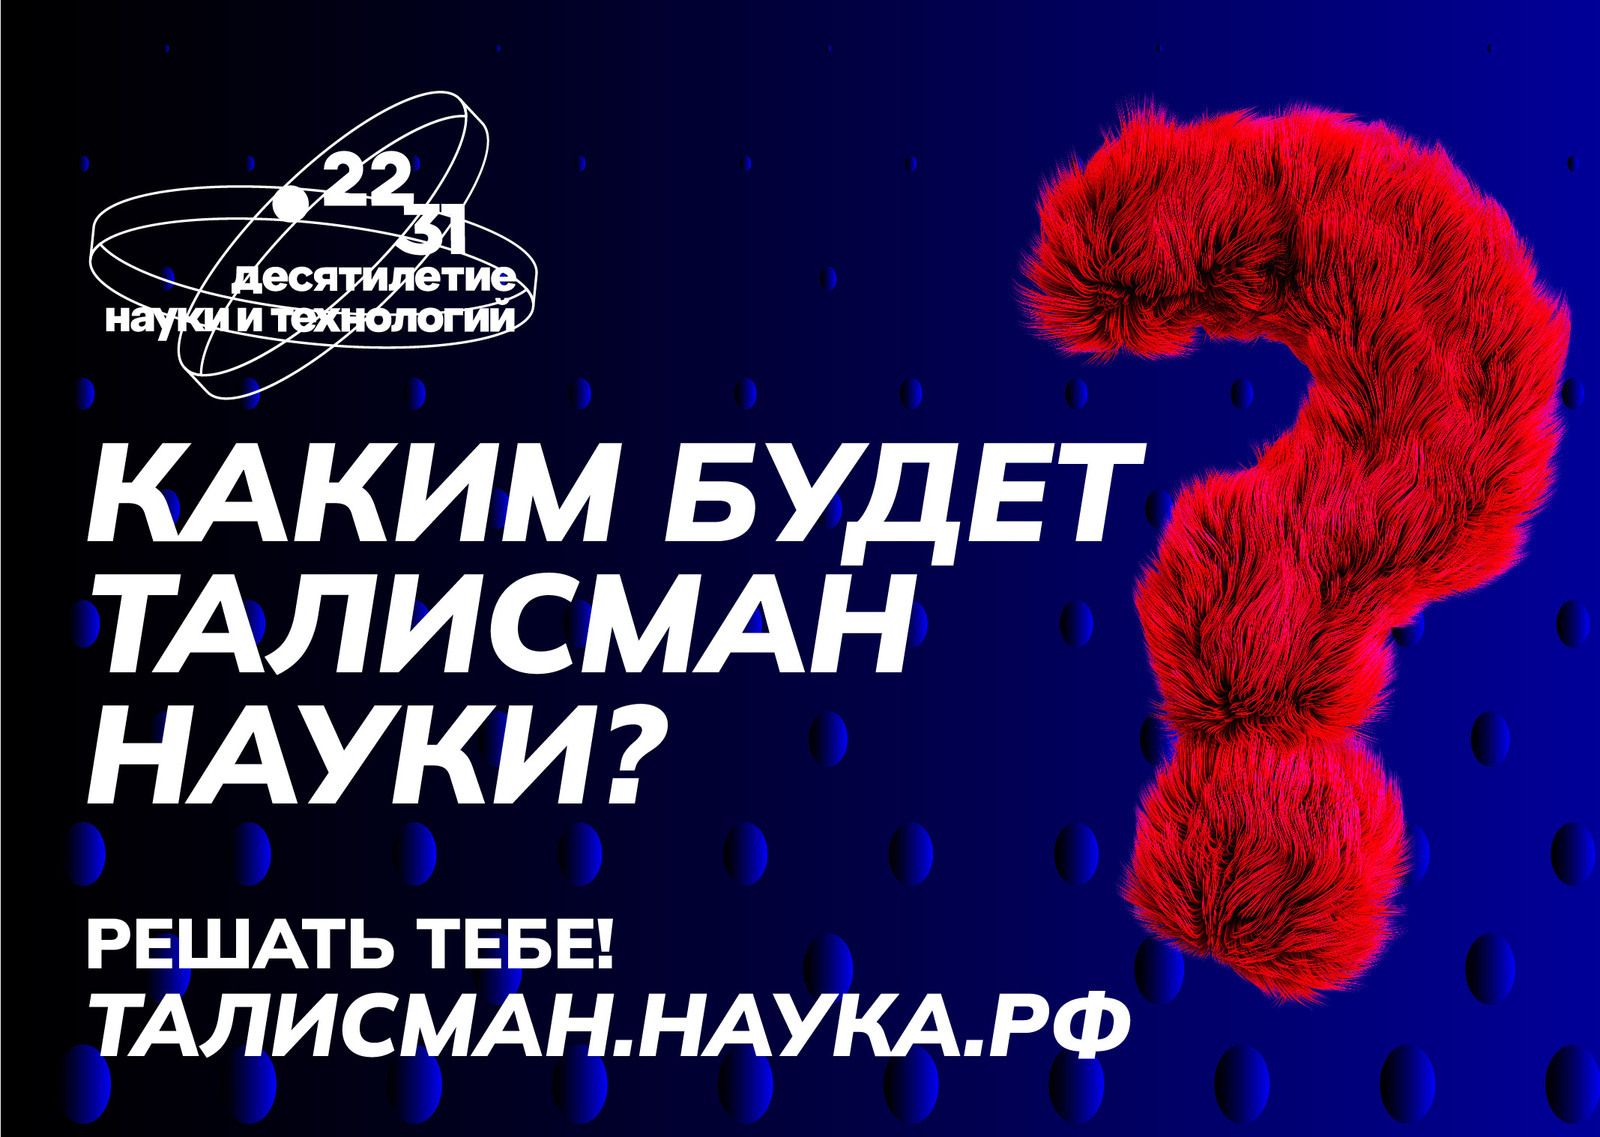 В России стартует конкурс на выбор Талисмана Десятилетия науки и технологий